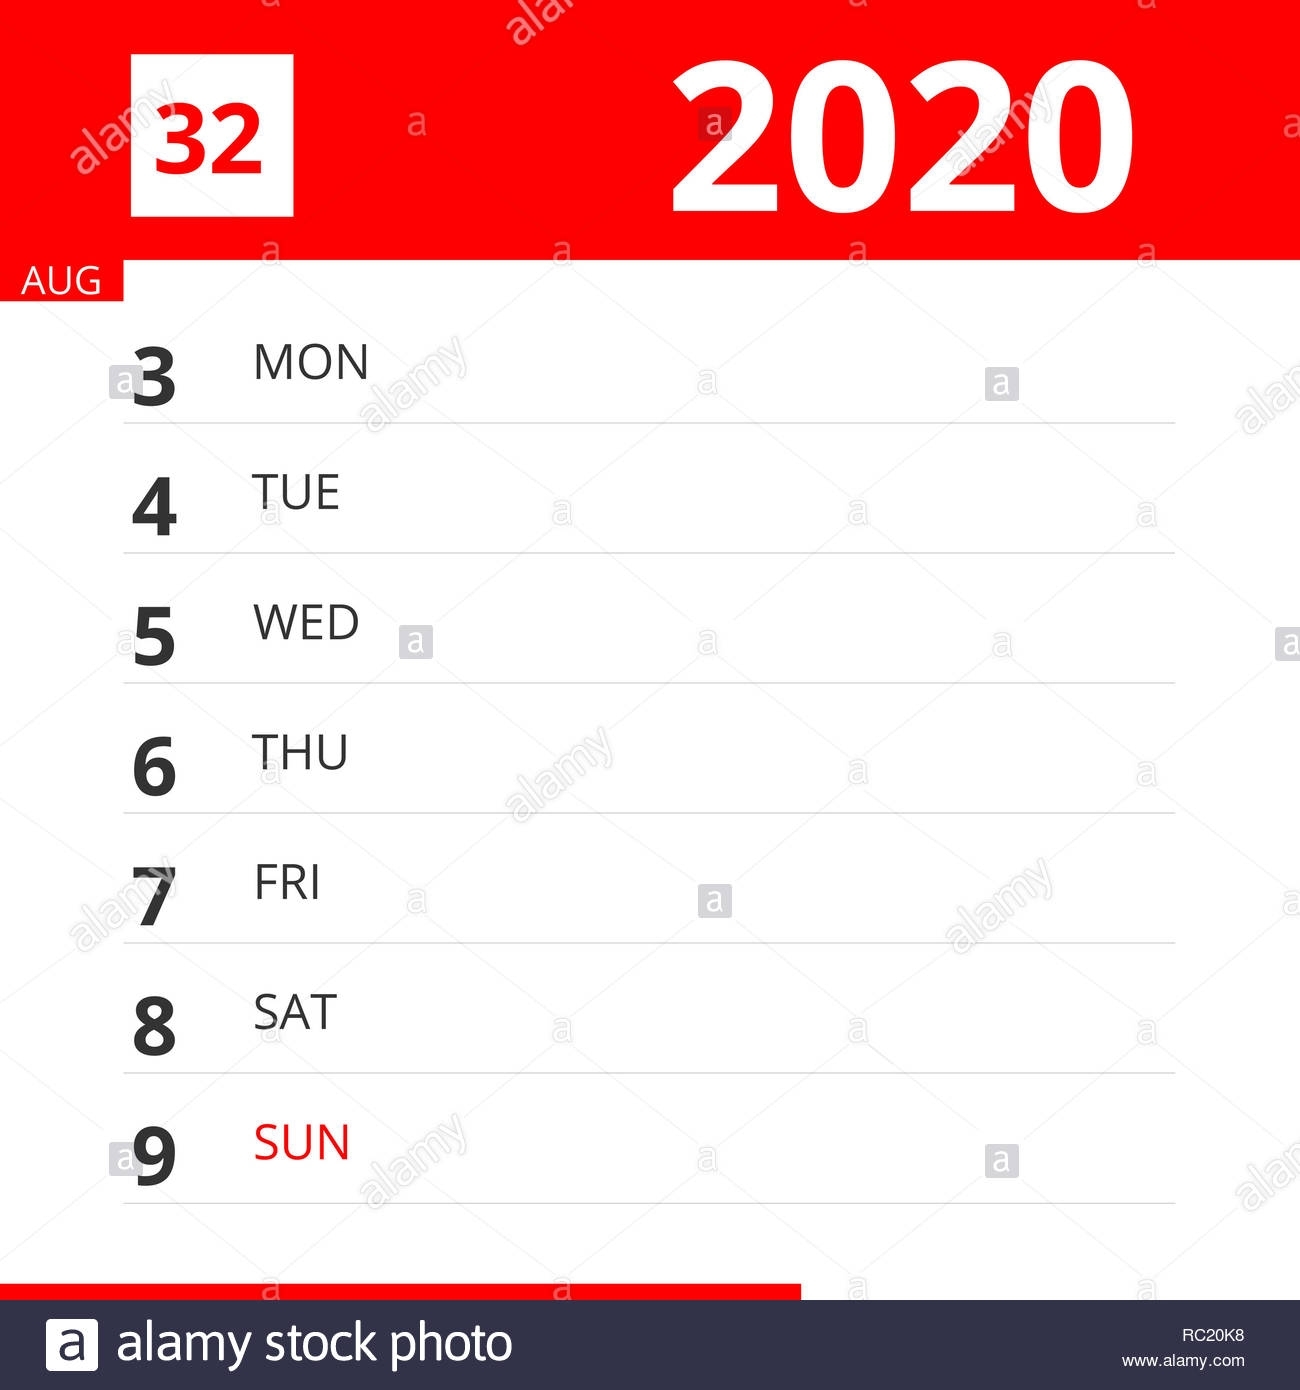 Calendar Planner For Week 32 In 2020, Ends August 9, 2020